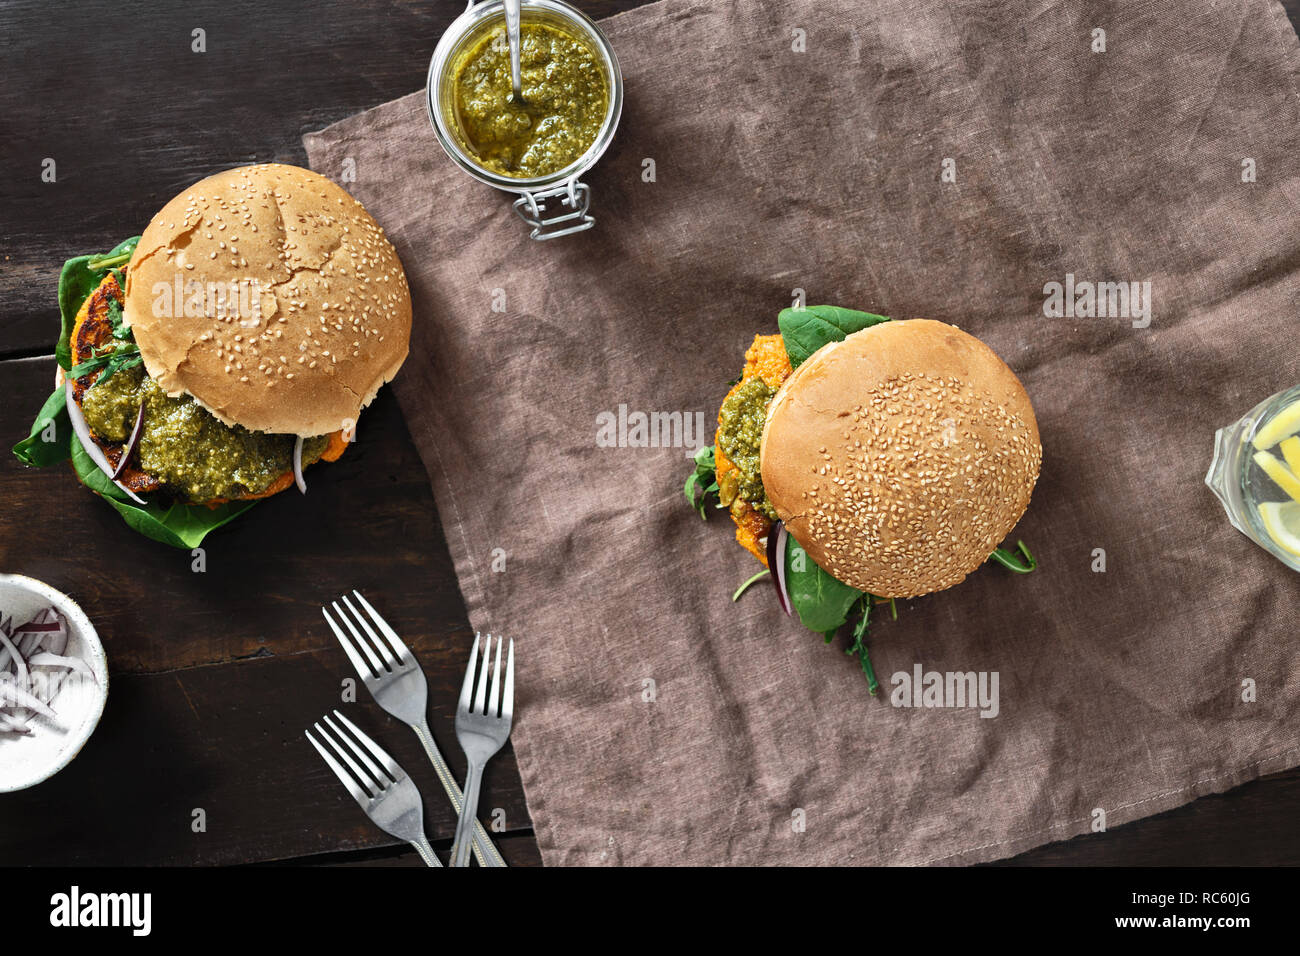 Concept alimentaire végétarien sain. Vue de dessus avec burger végétarien escalope de citrouille, Épinards, roquette et pesto végétarien servi sur la plaque sur le sol en bois Banque D'Images